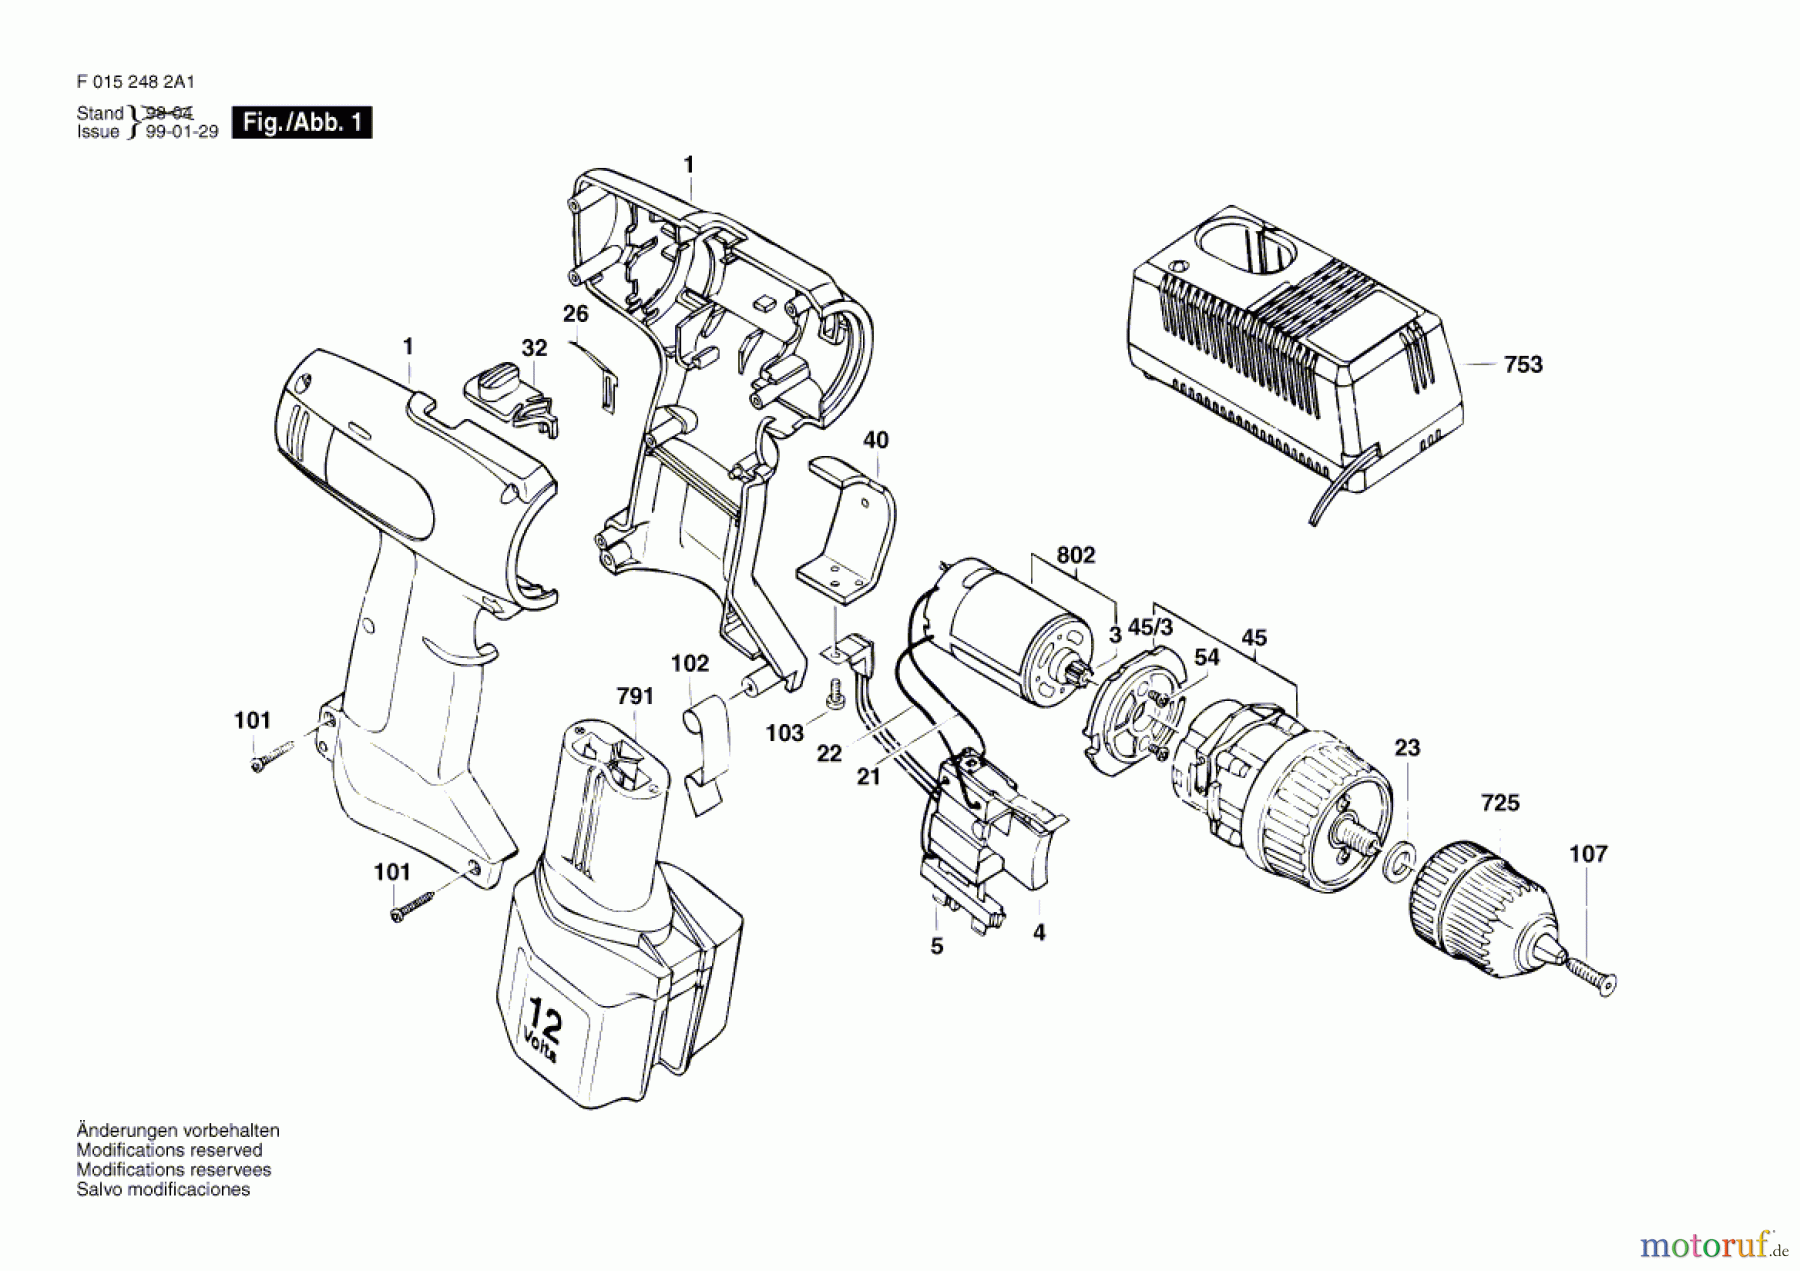  Bosch Werkzeug Bohrschrauber 2482 Seite 1